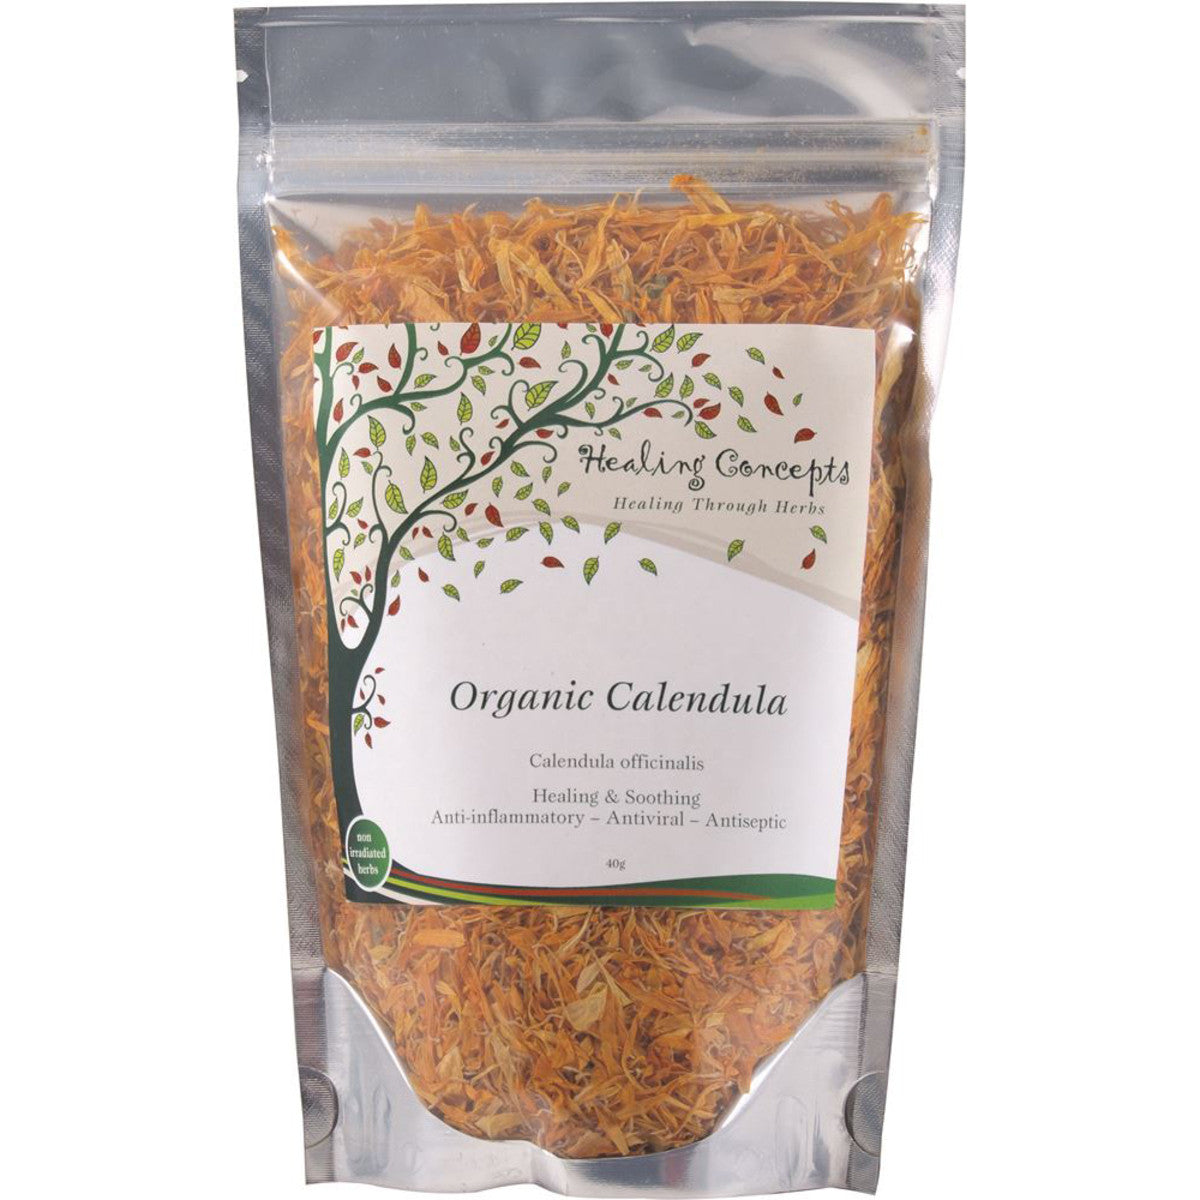 Healing Concepts Calendula Tea 30g, Certified Organic